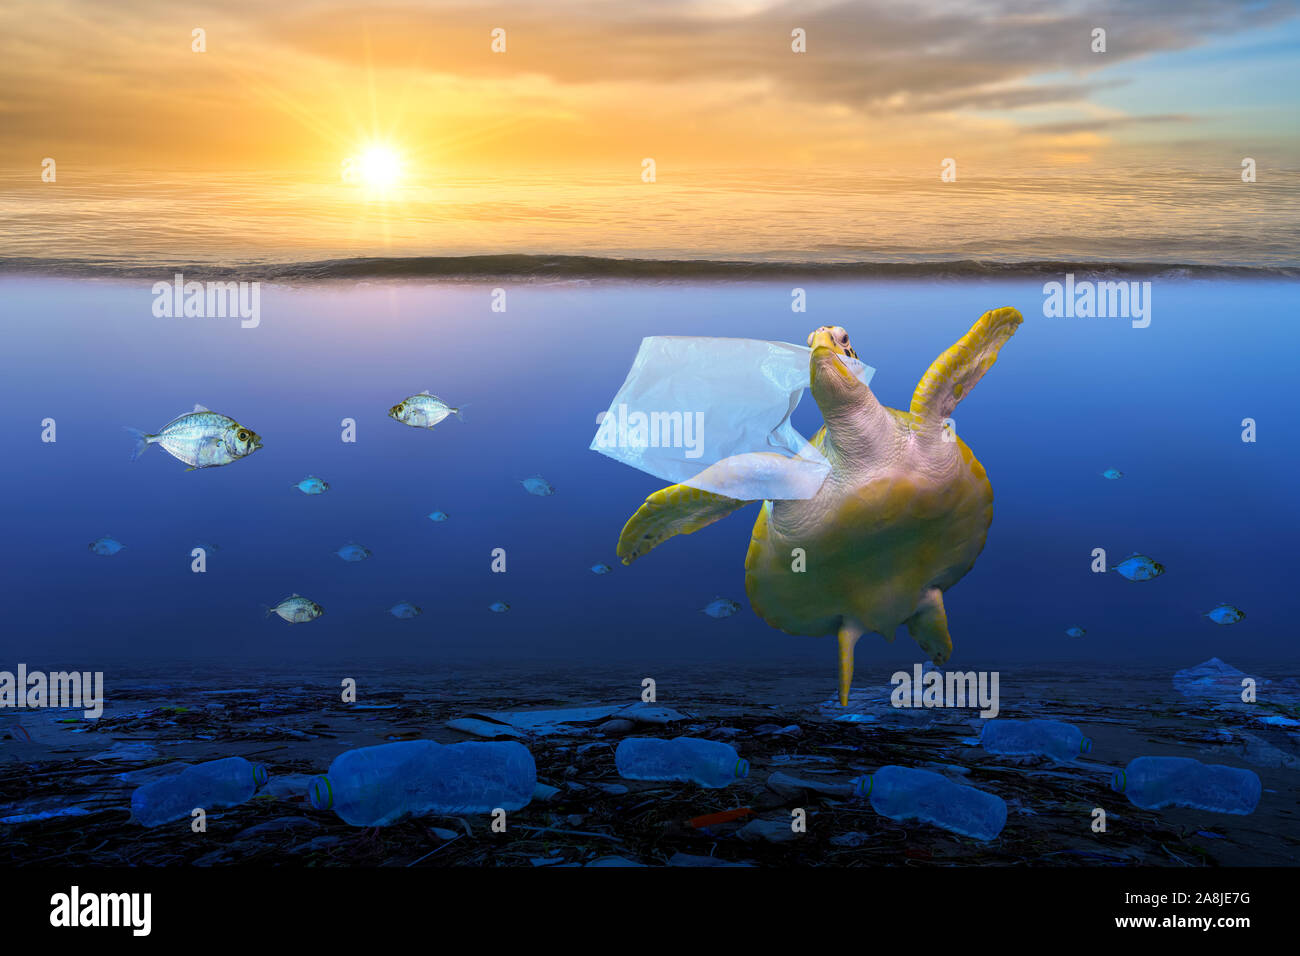 Océan de plastique Sacs en plastique de l'alimentation sont des tortues sous le bleu de la mer. Concepts de la conservation de l'environnement et de ne pas jeter de déchets dans la mer Banque D'Images